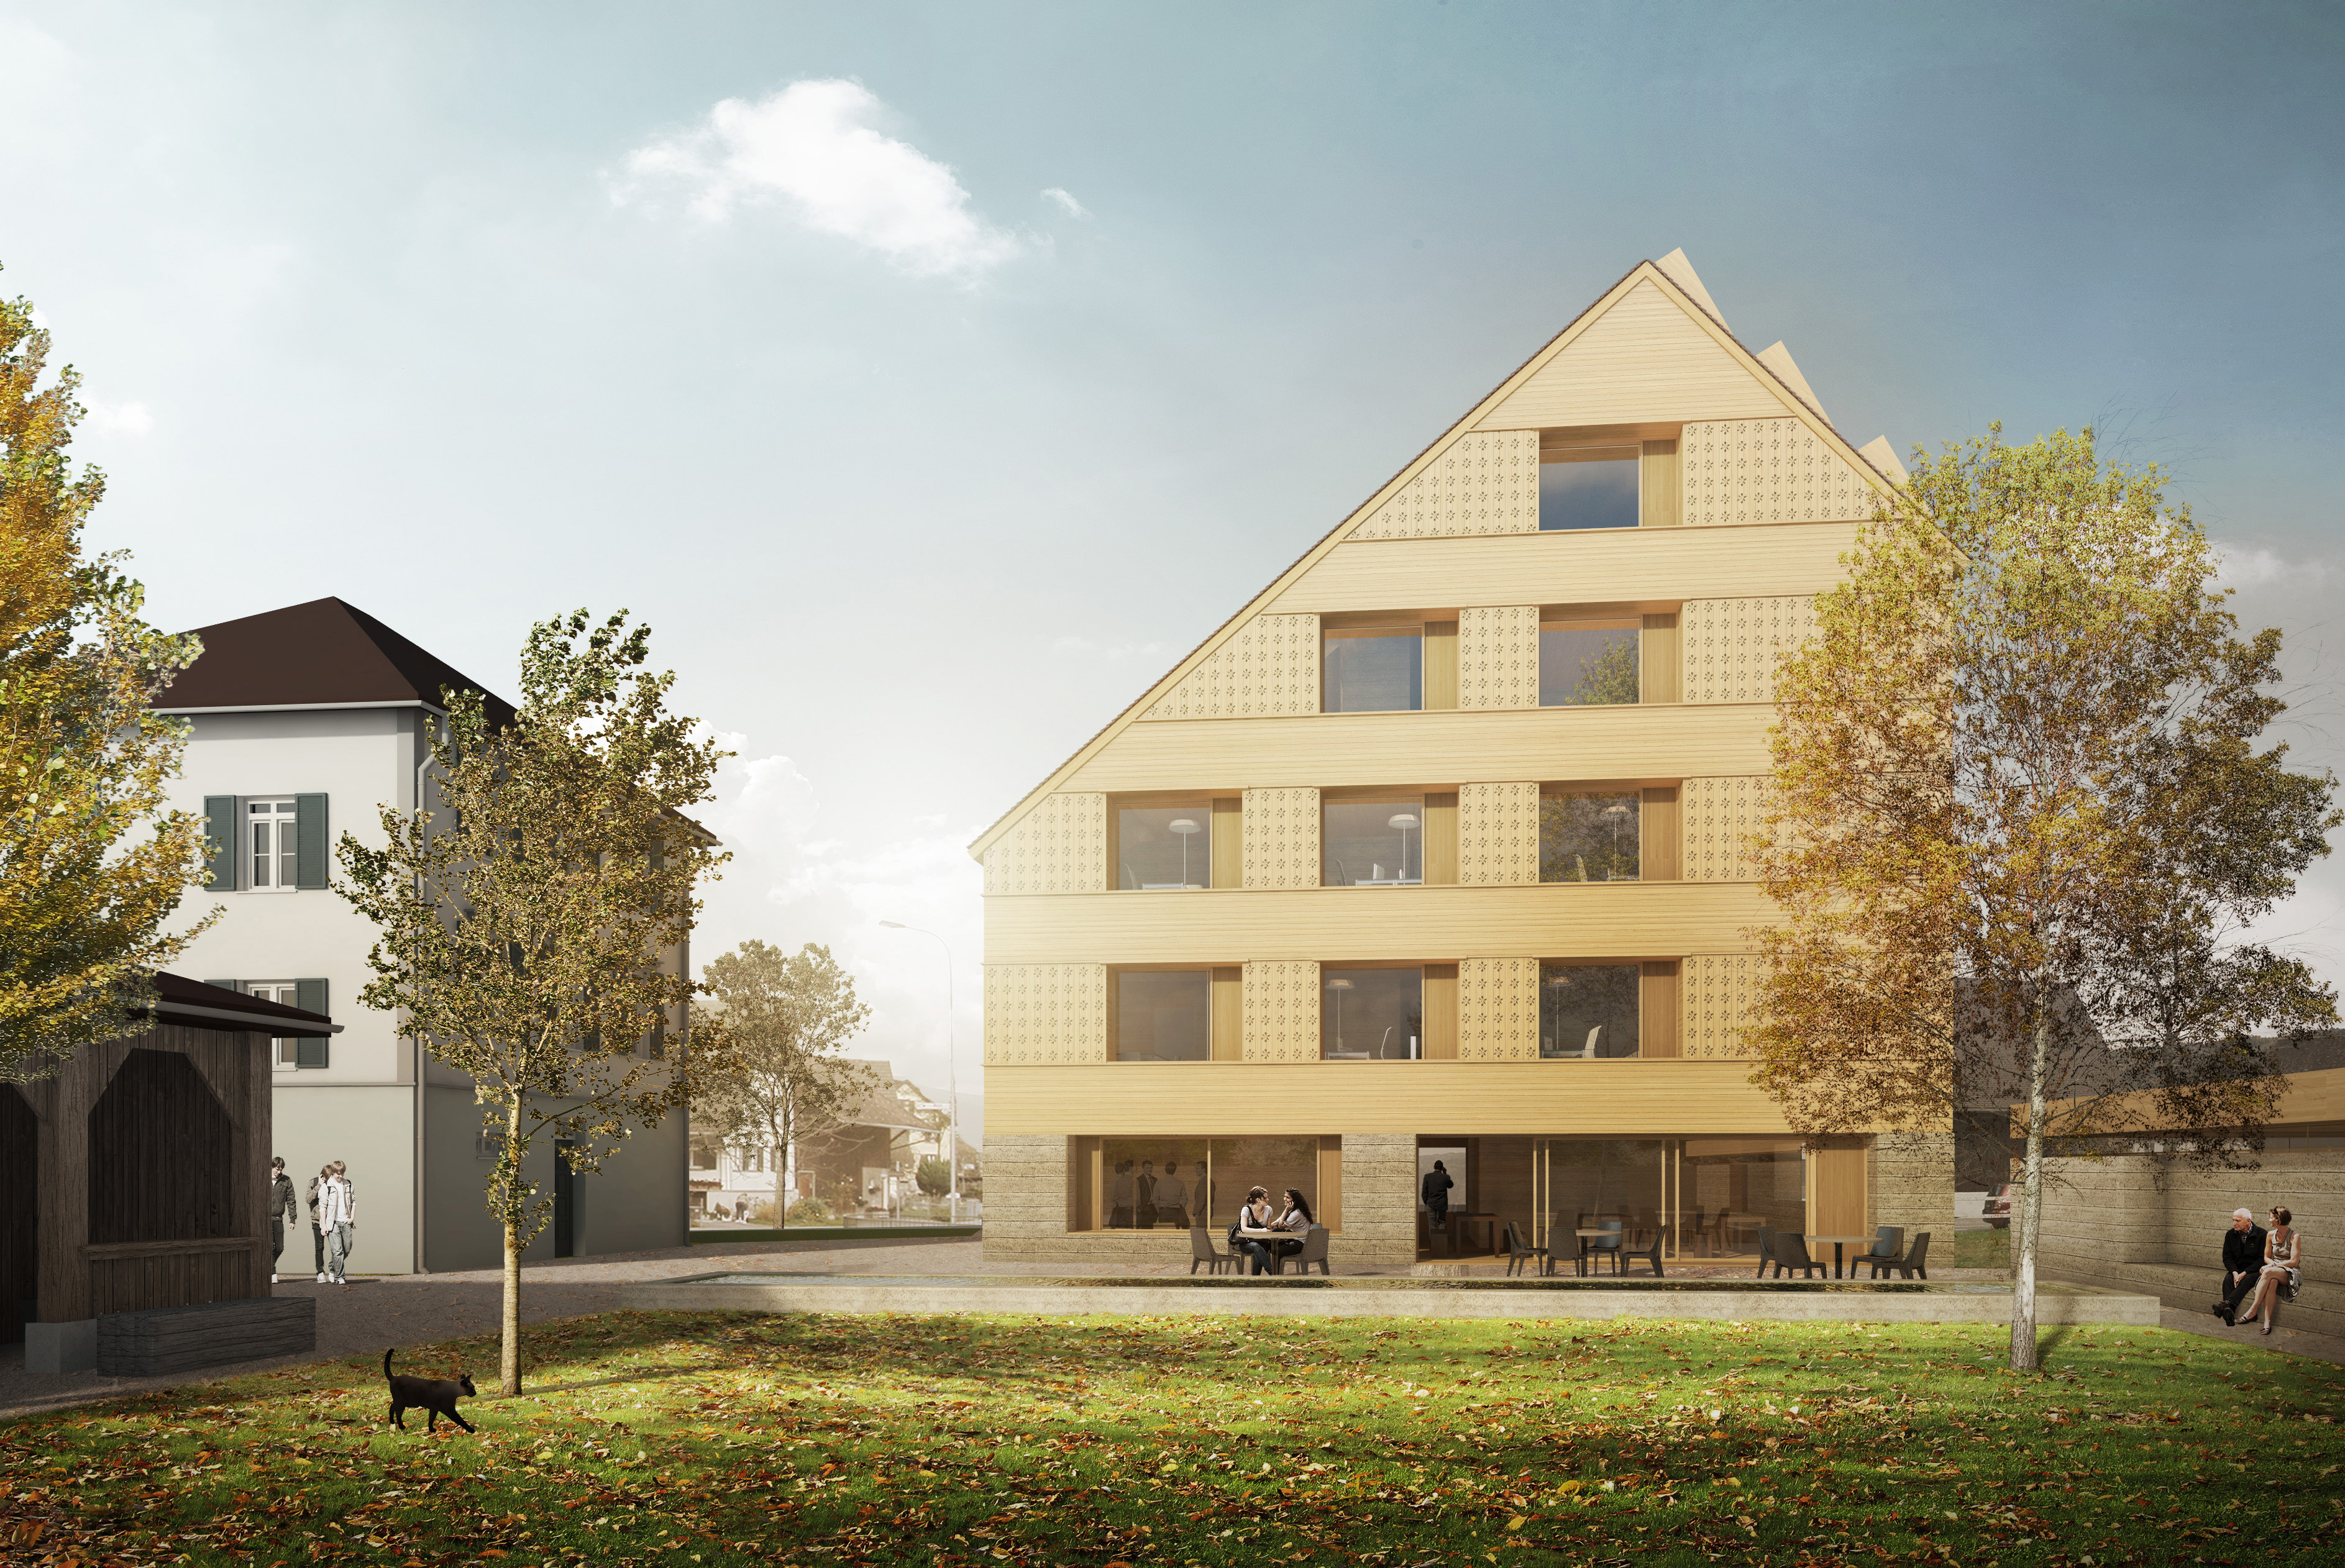 Beat Burgmaier Architekten Umbau und Erweiterung Pflegeheim* Balzers, Liechtenstein 2016 [Projektleitung Architekturleistung*] Entwicklung Haus